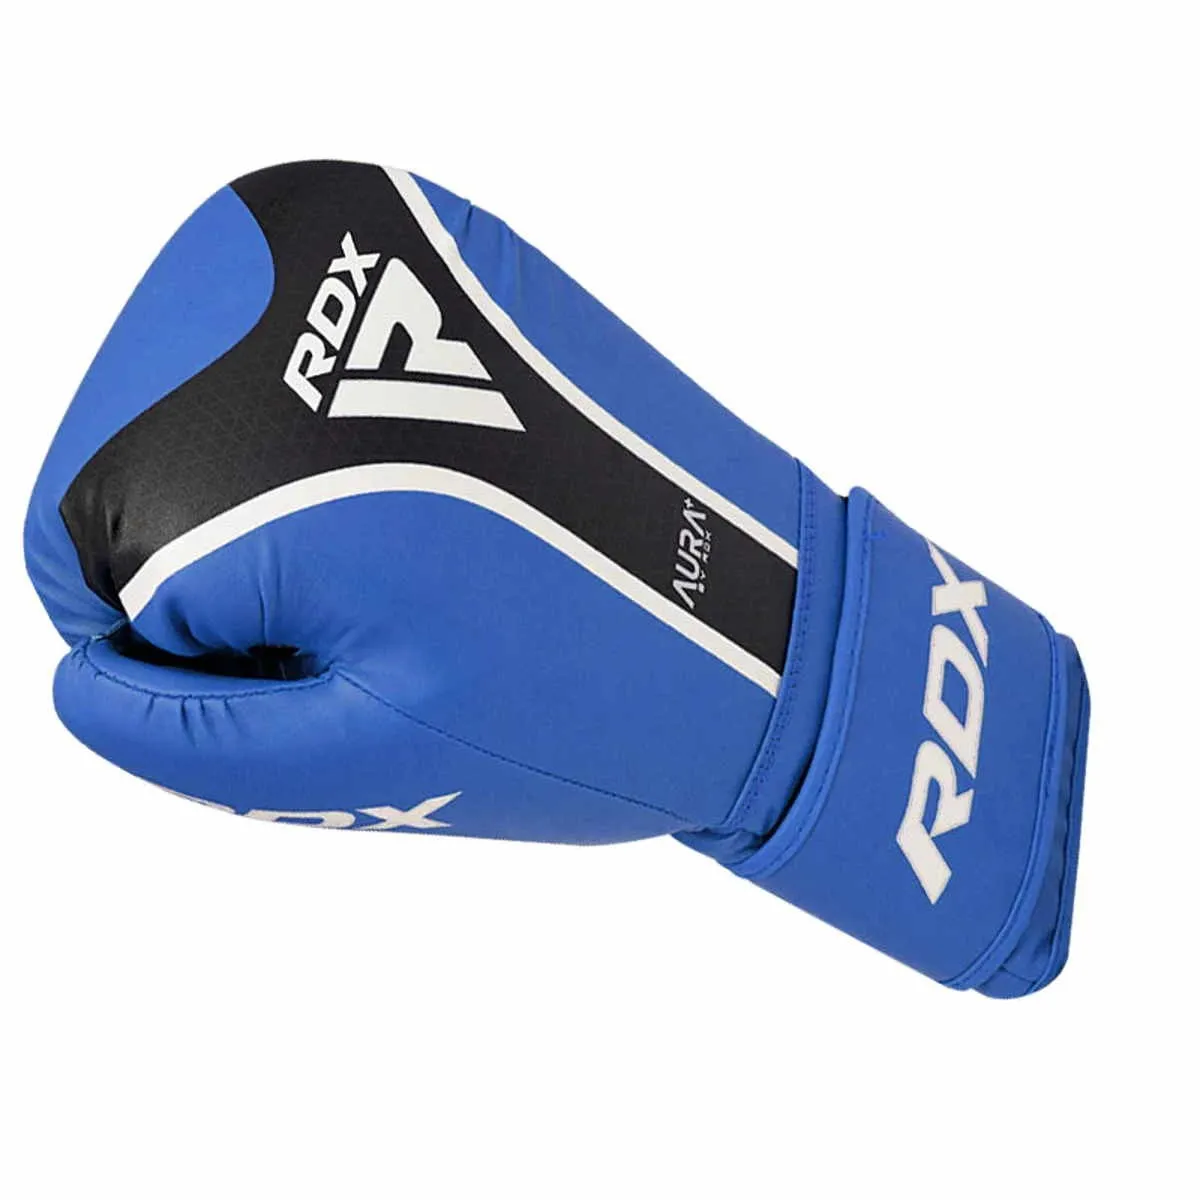 Boxing gloves RDX Aura Plus blue